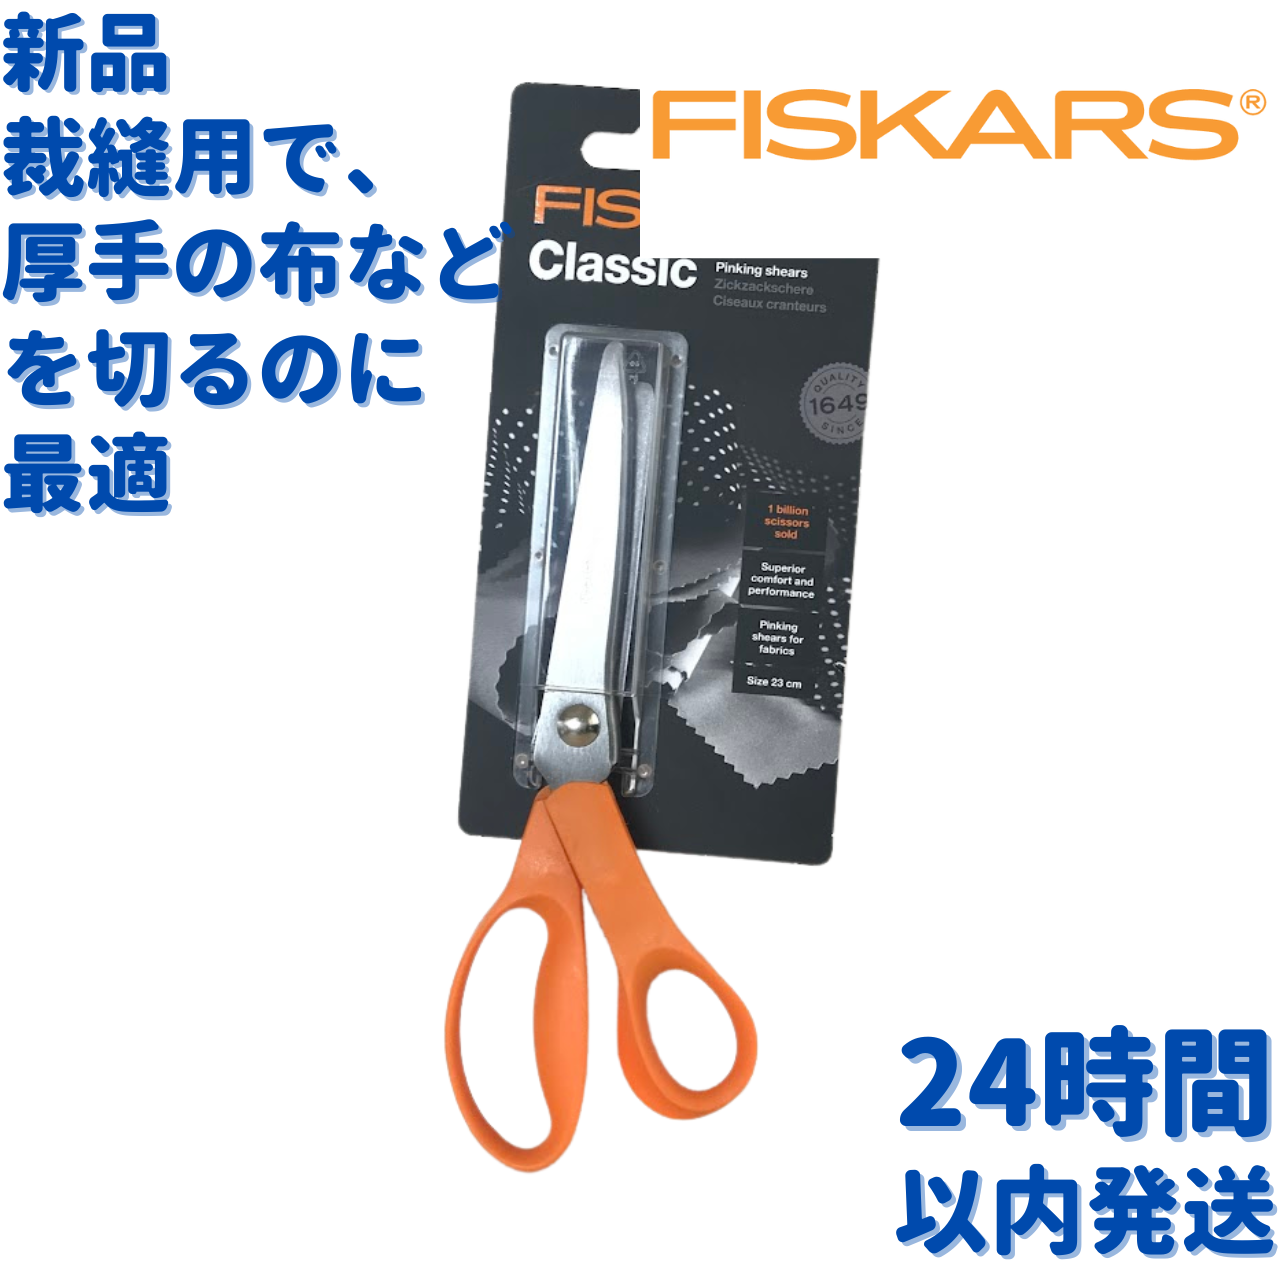 Fiskars フィスカース クラシック ピンキング はさみ 23cm www.ch4x4.com